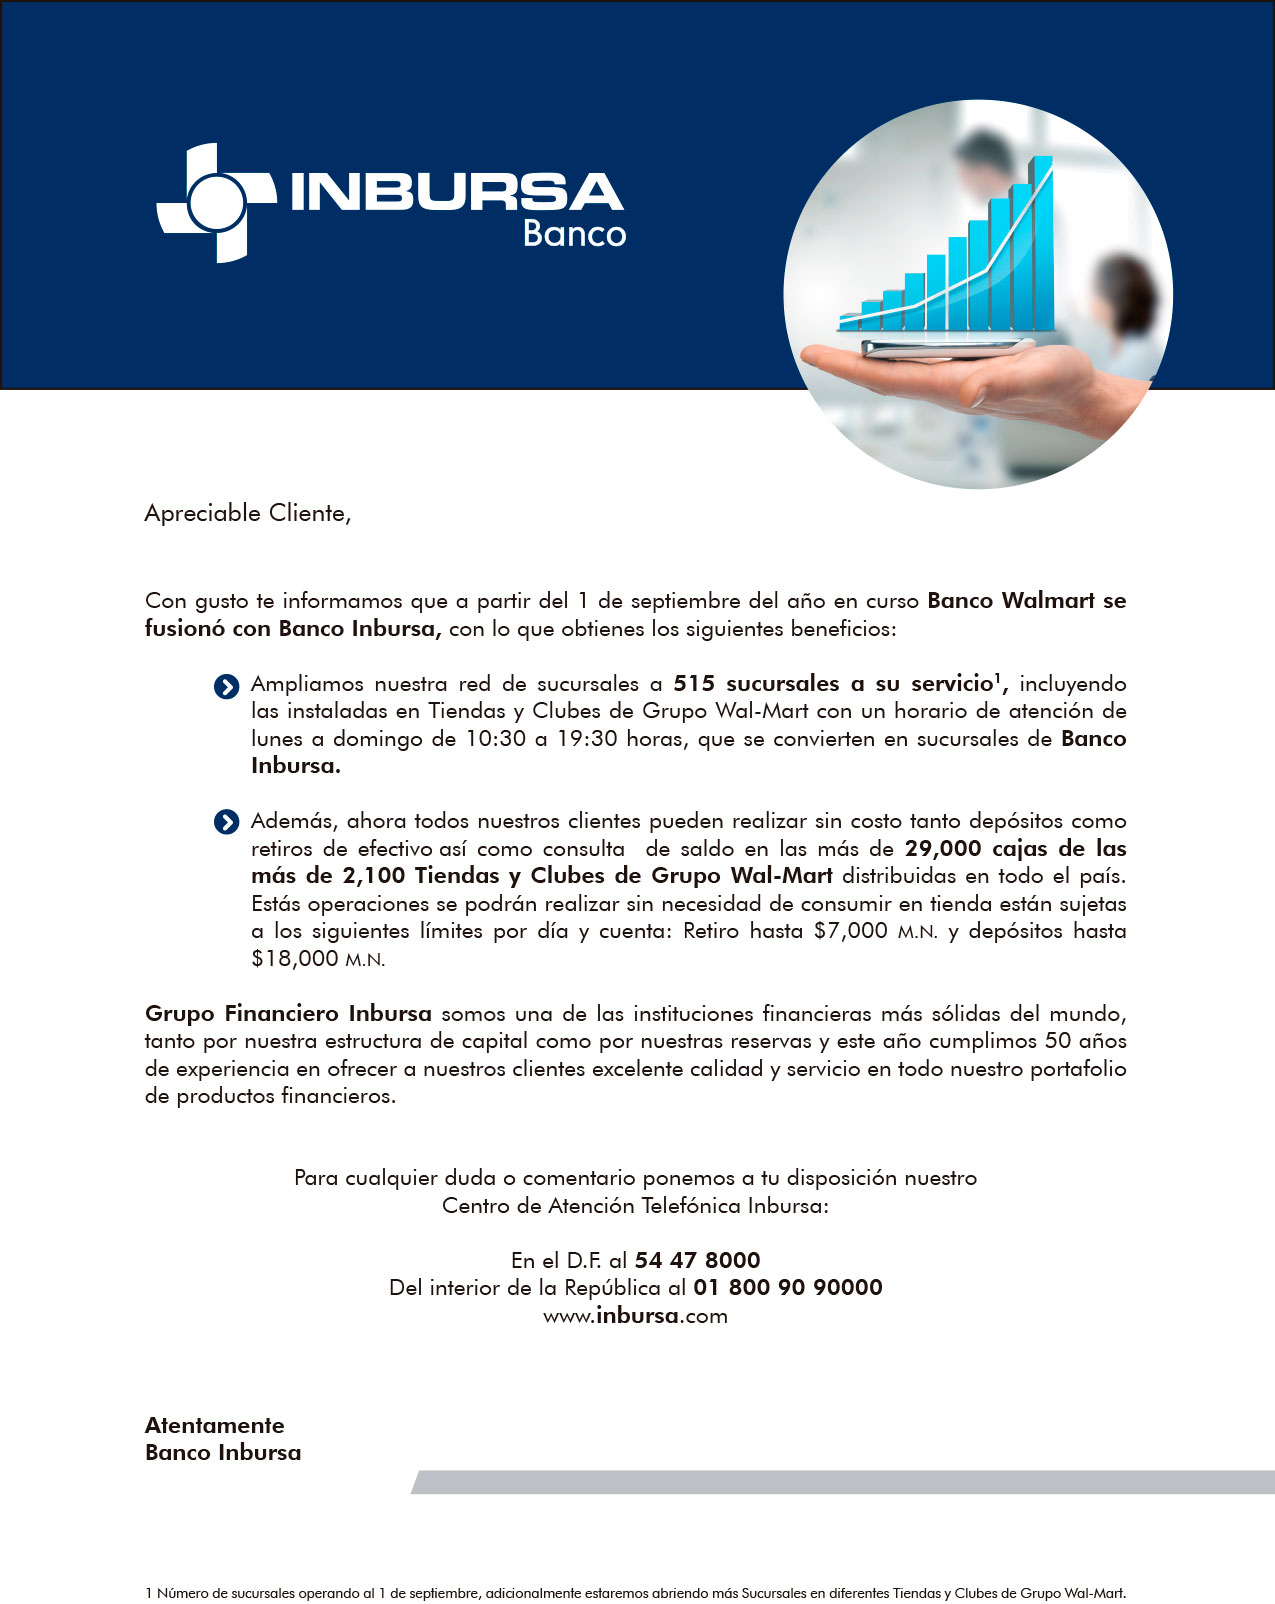  Grupo Financiero Inbursa